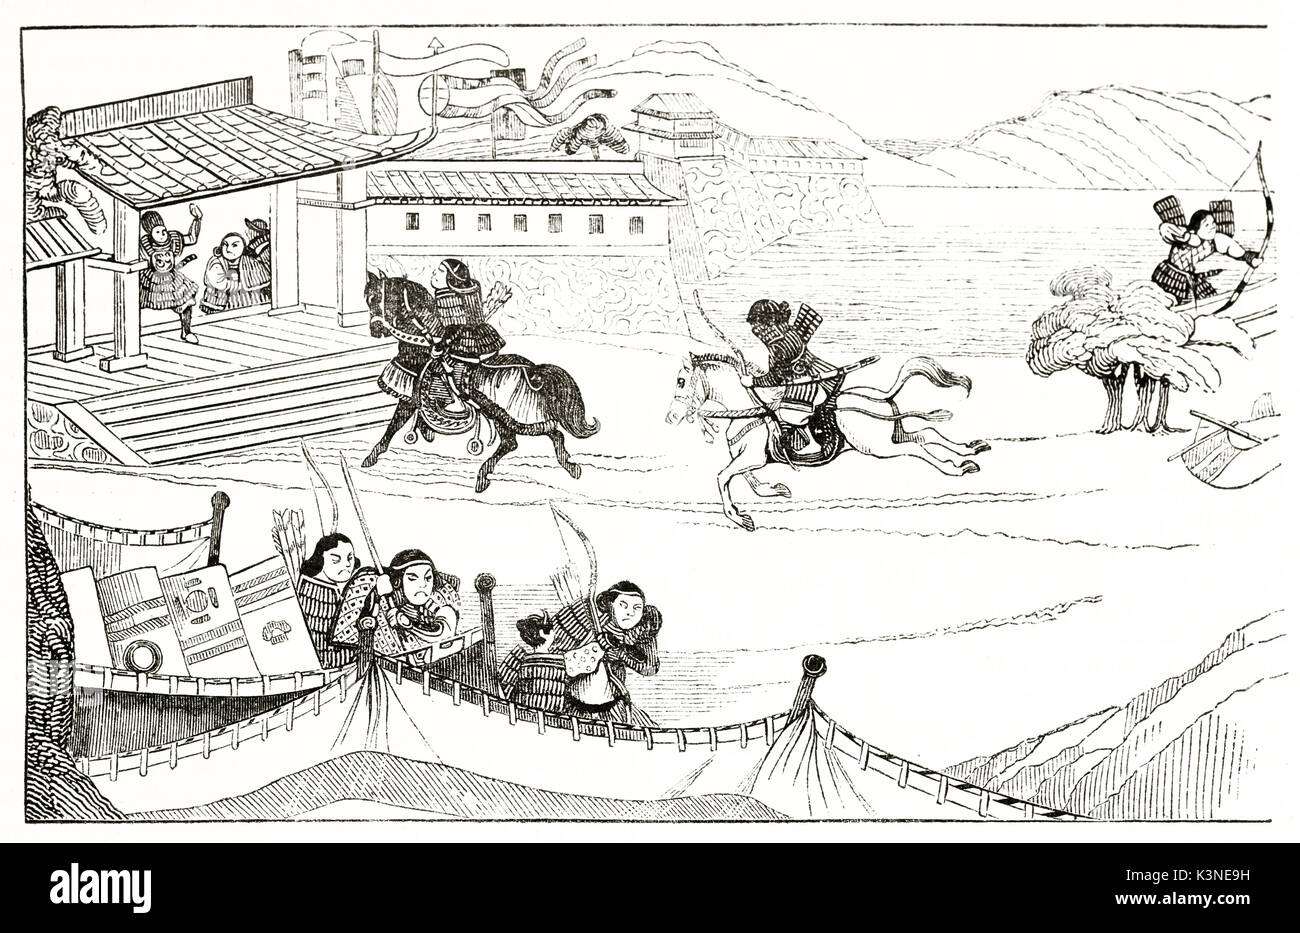 Alten orientalischen Stil schwarz-weiß illustration der japanischen Armee realisiert mit einem einfachen skizzieren. Nach Seidenmalerei, die durch unbekannte Autor auf Magasin Pittoresque Paris 1839 veröffentlicht. Stockfoto